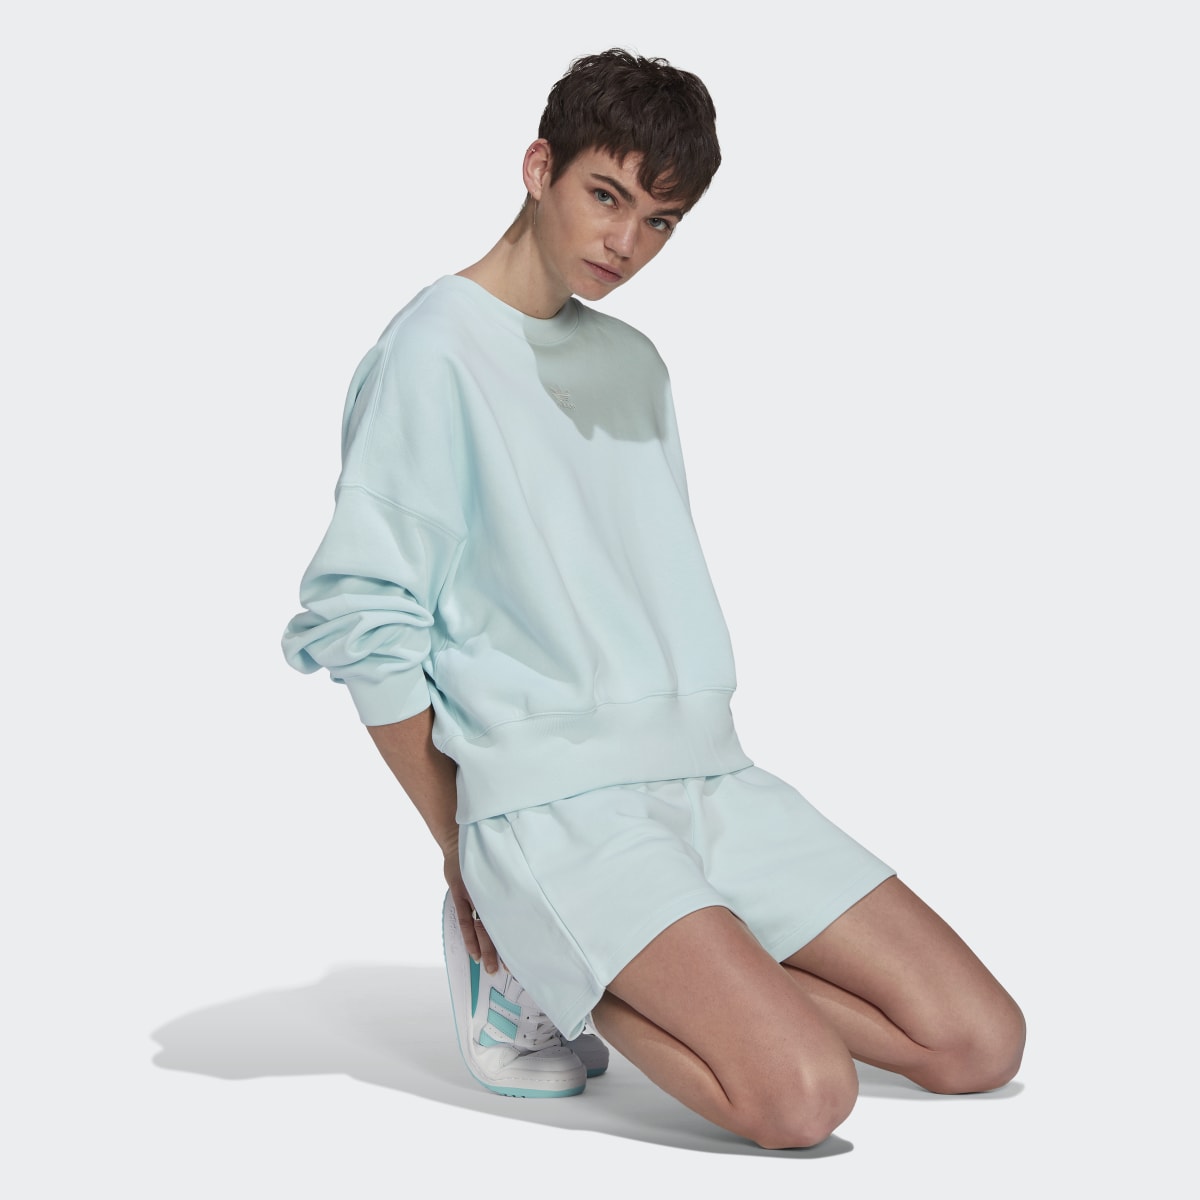 Adidas Adicolor Essentials Fleece Sweatshirt. 4